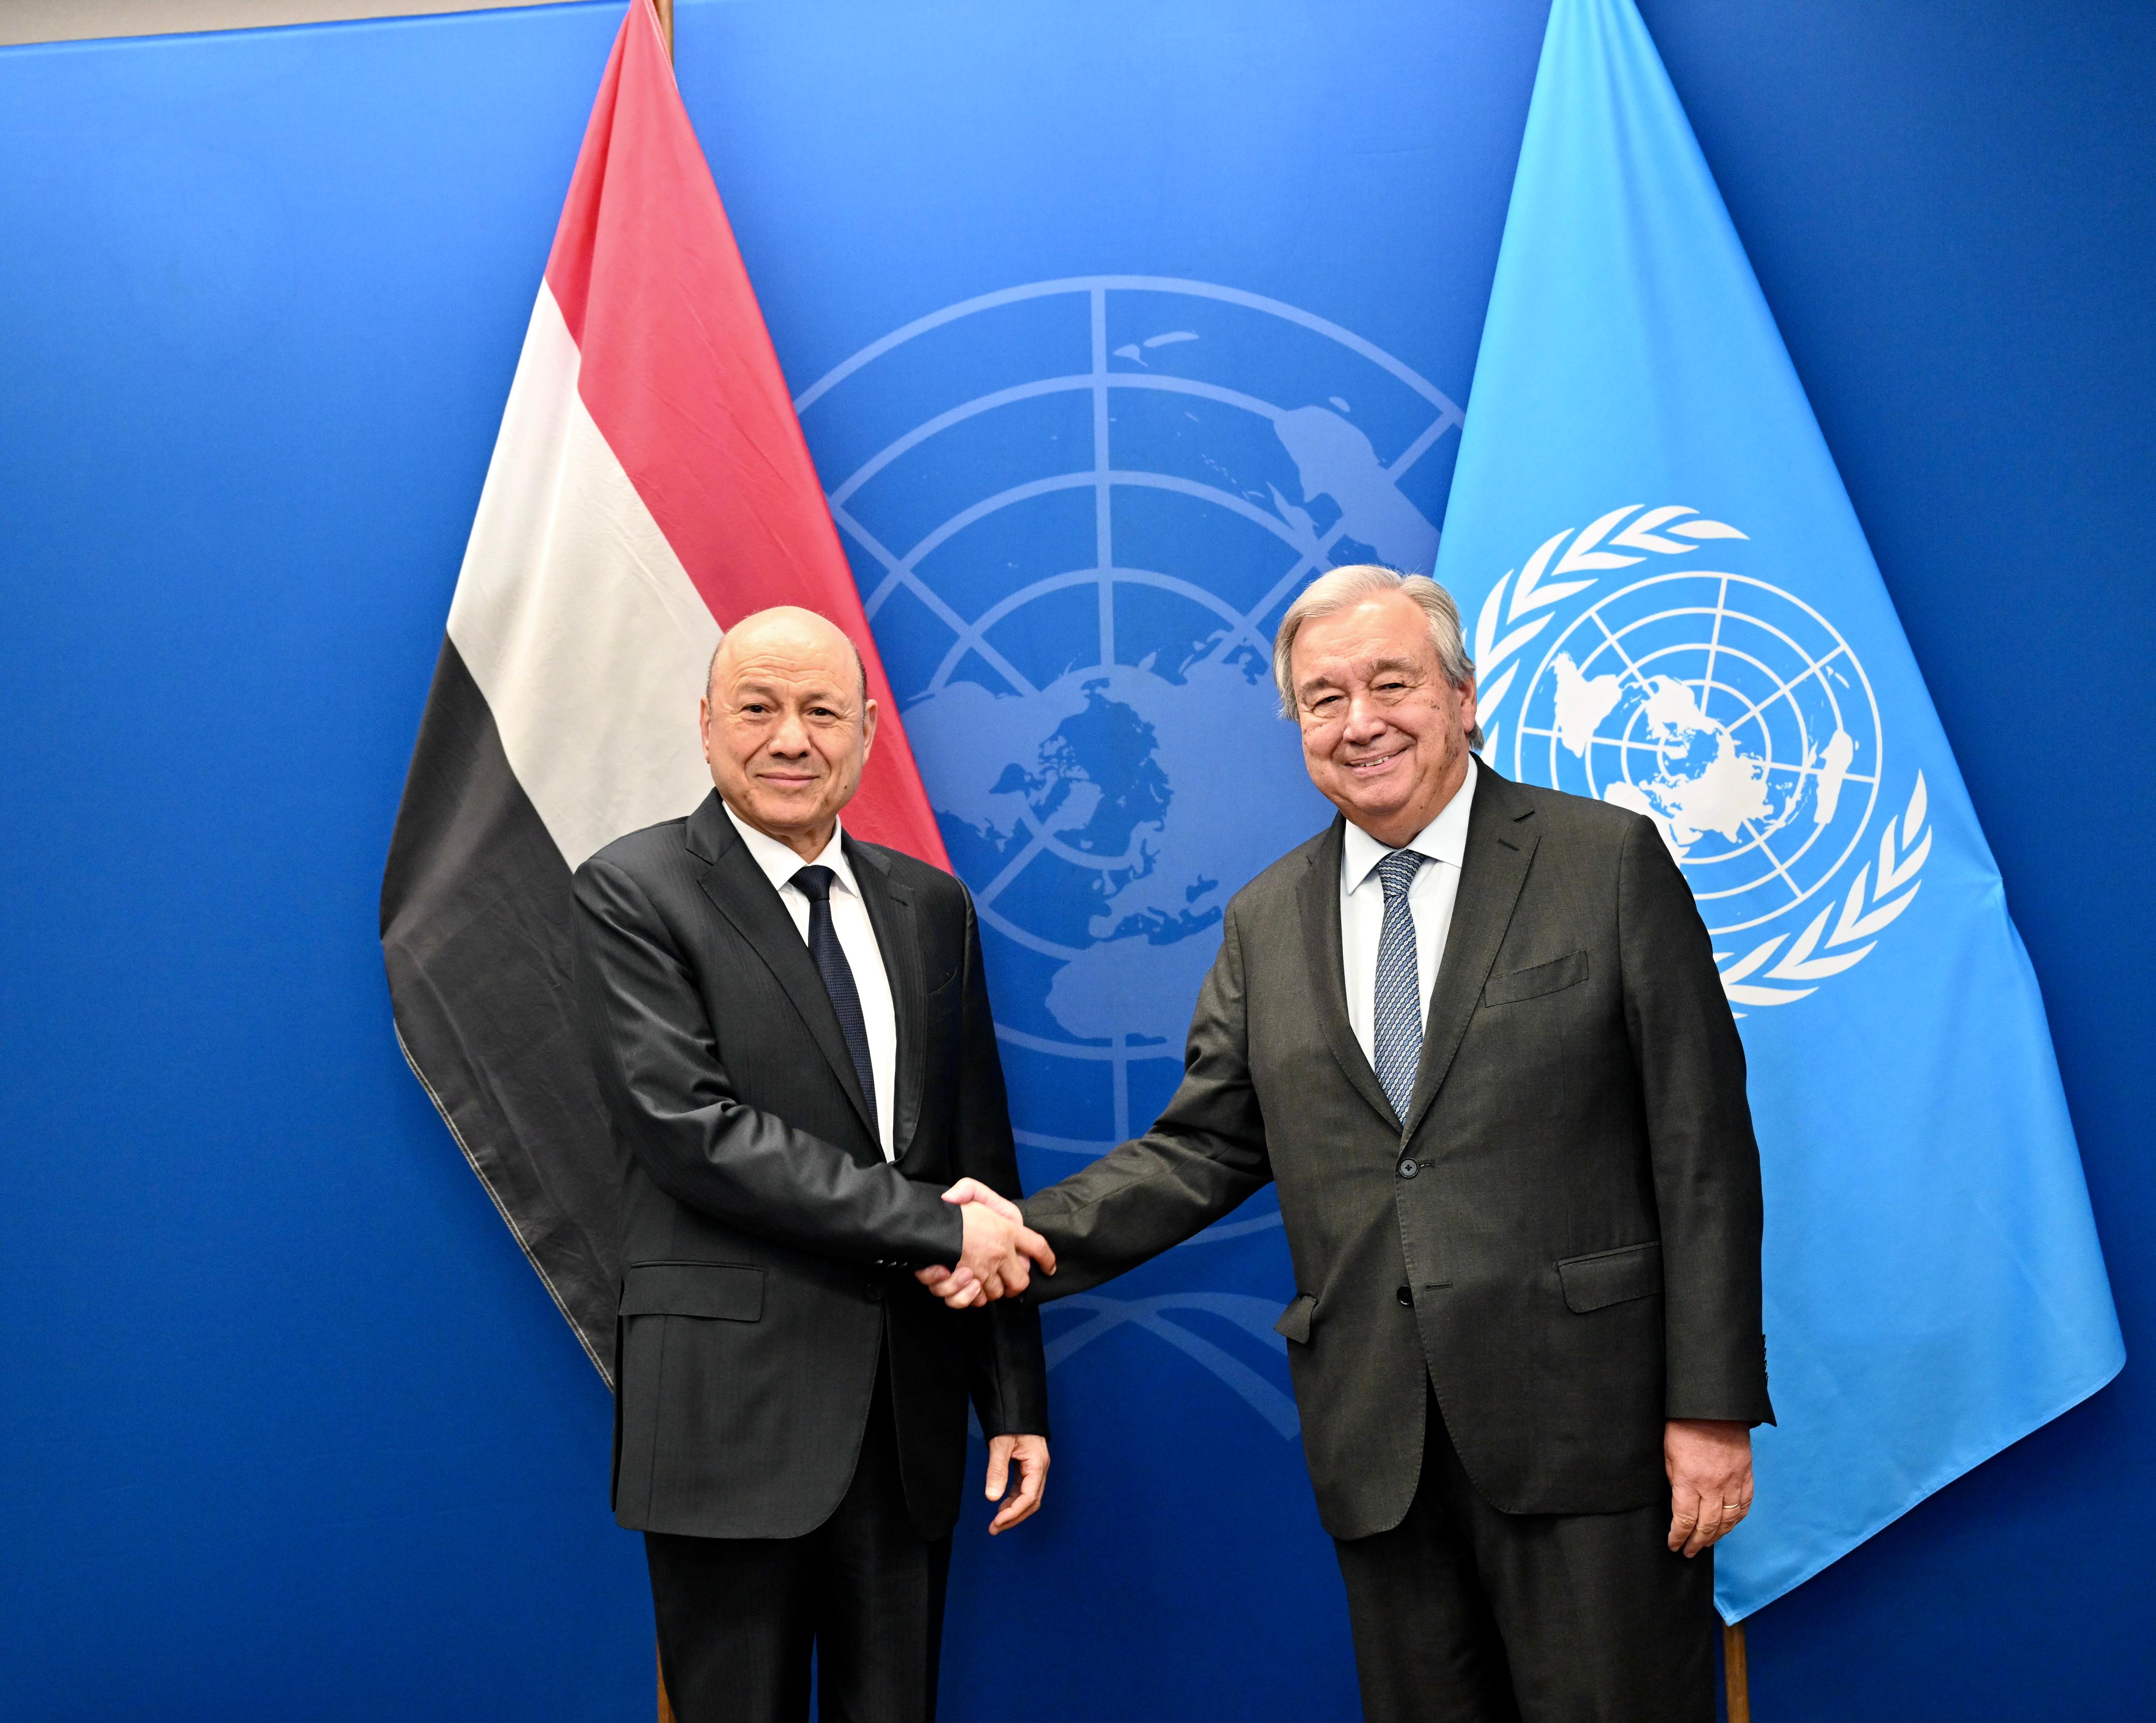 رئيس مجلس القيادة الرئاسي يبحث وامين عام الأمم المتحدة الوضع الانساني وجهود احلال السلام في اليمن ، 23 سبتمبر 2023